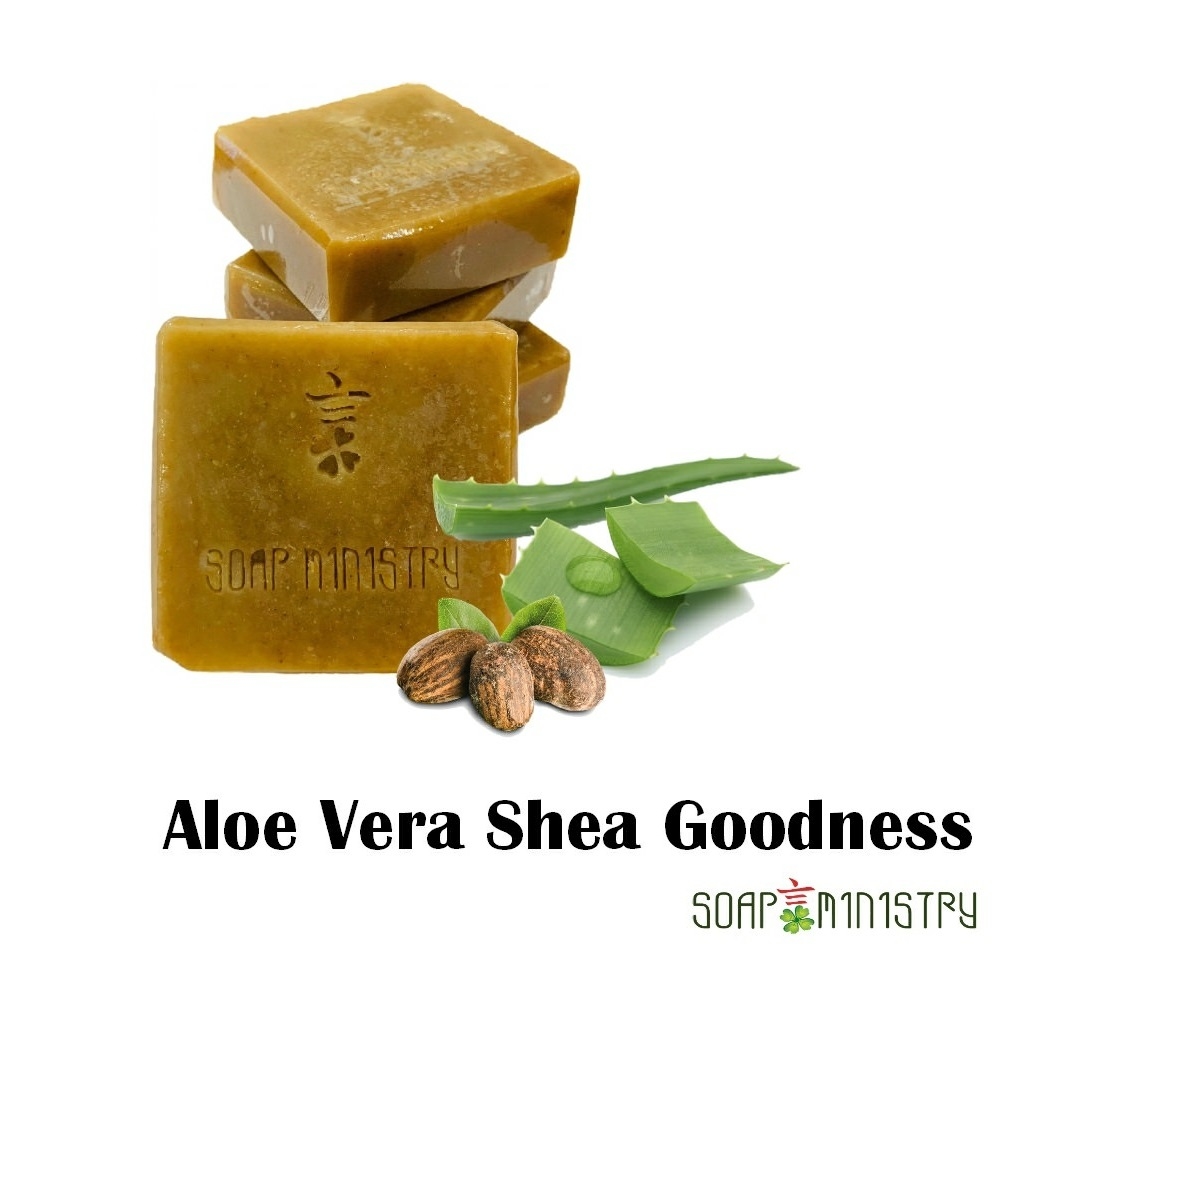 Aloe Vera Shea Goodness Soap